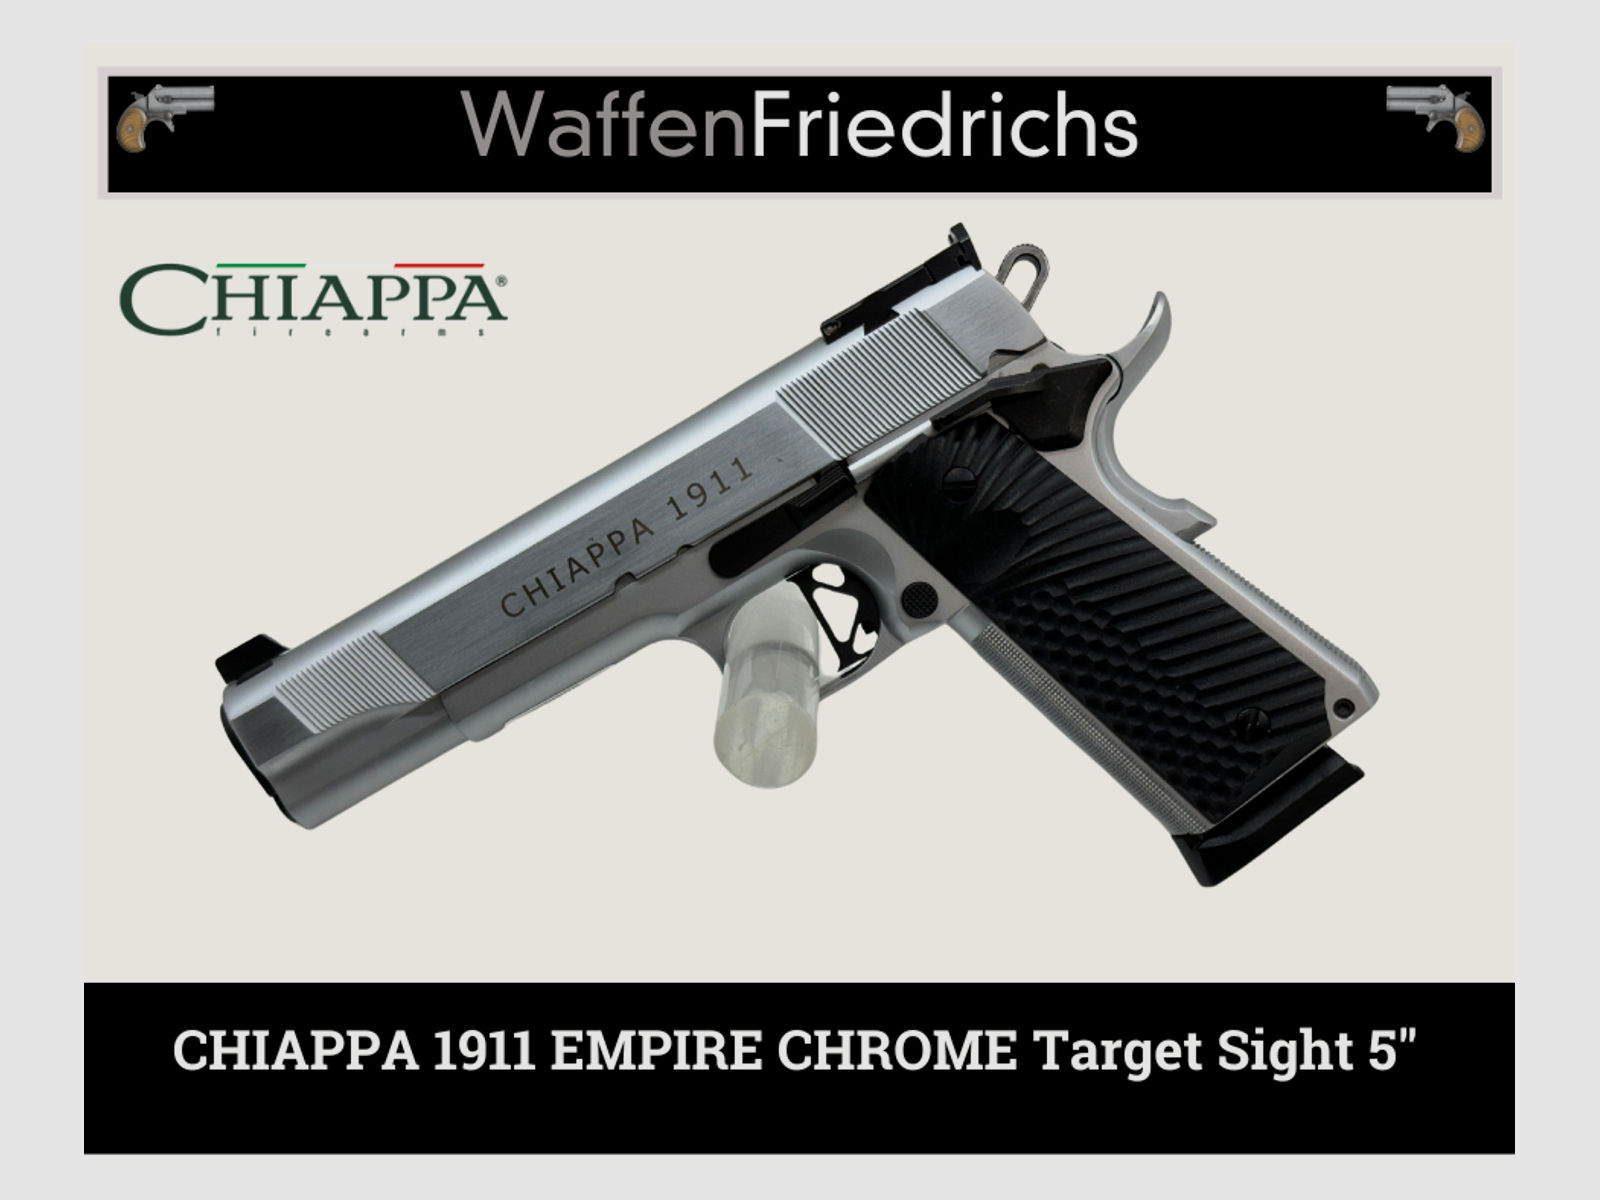 CHIAPPA Empire Chrome Target Sight 5" - WaffenFriedrichs